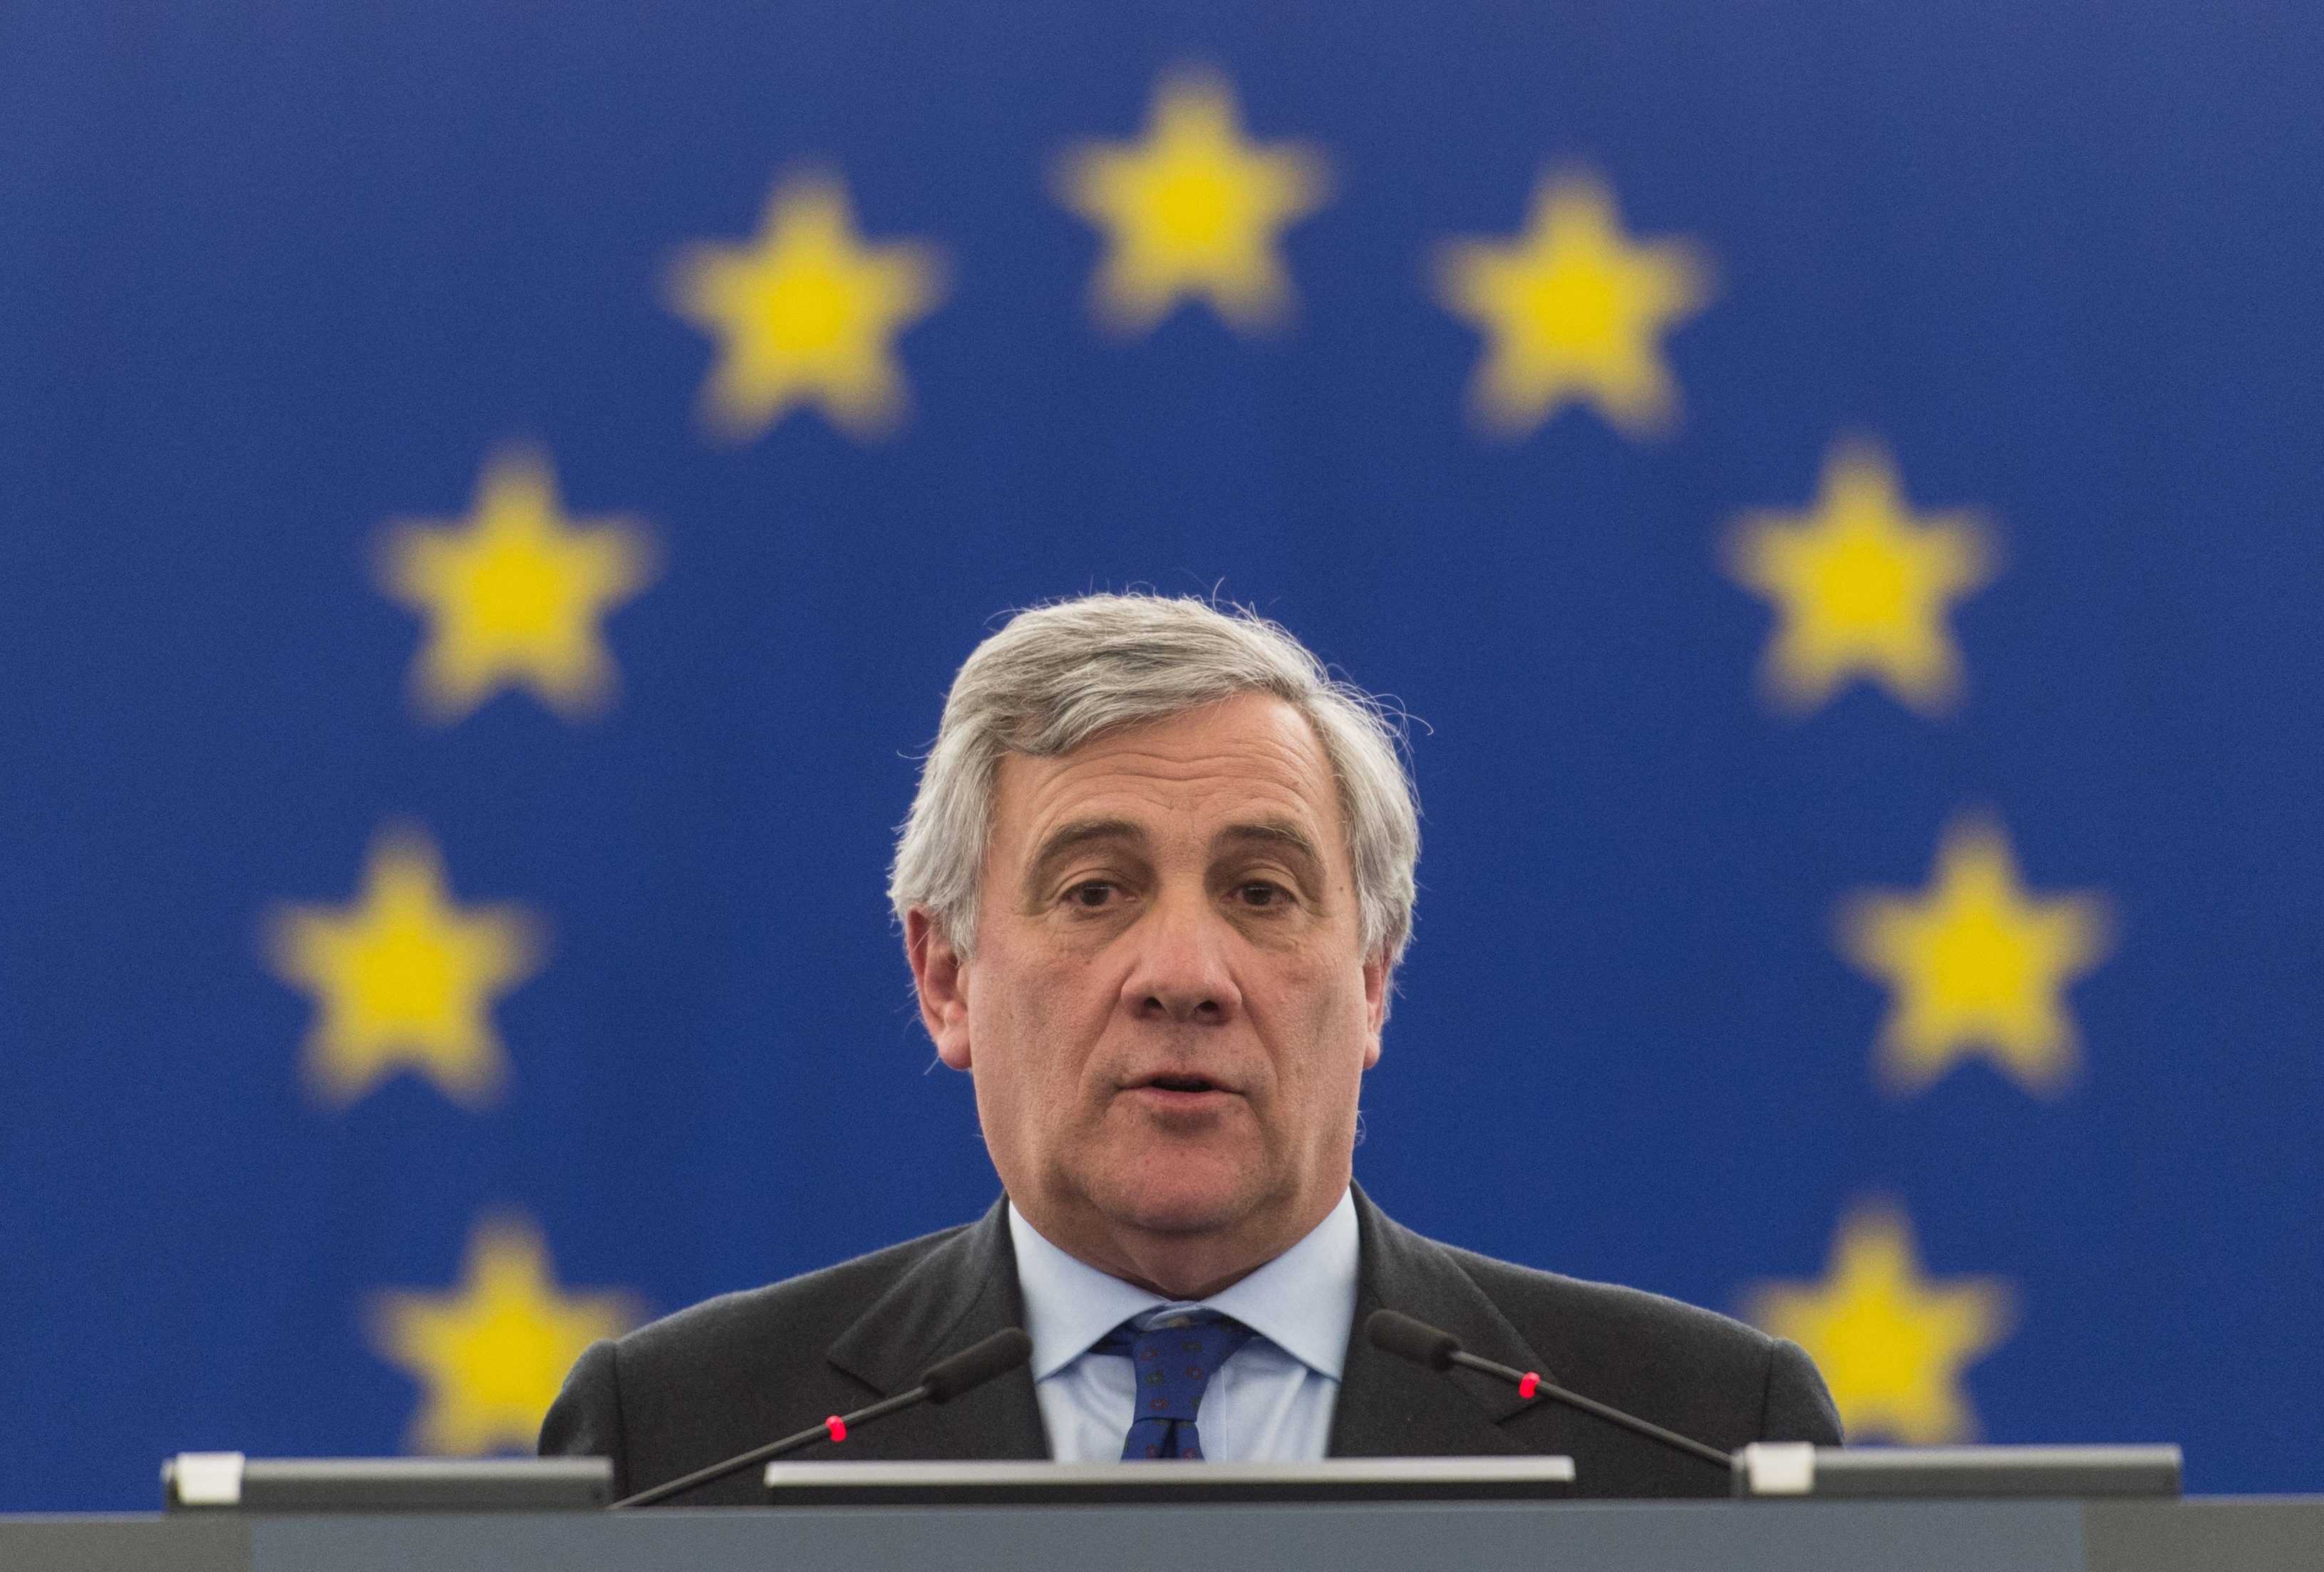 El president del Parlament Europeu 'contraprograma' l'acte de Puigdemont